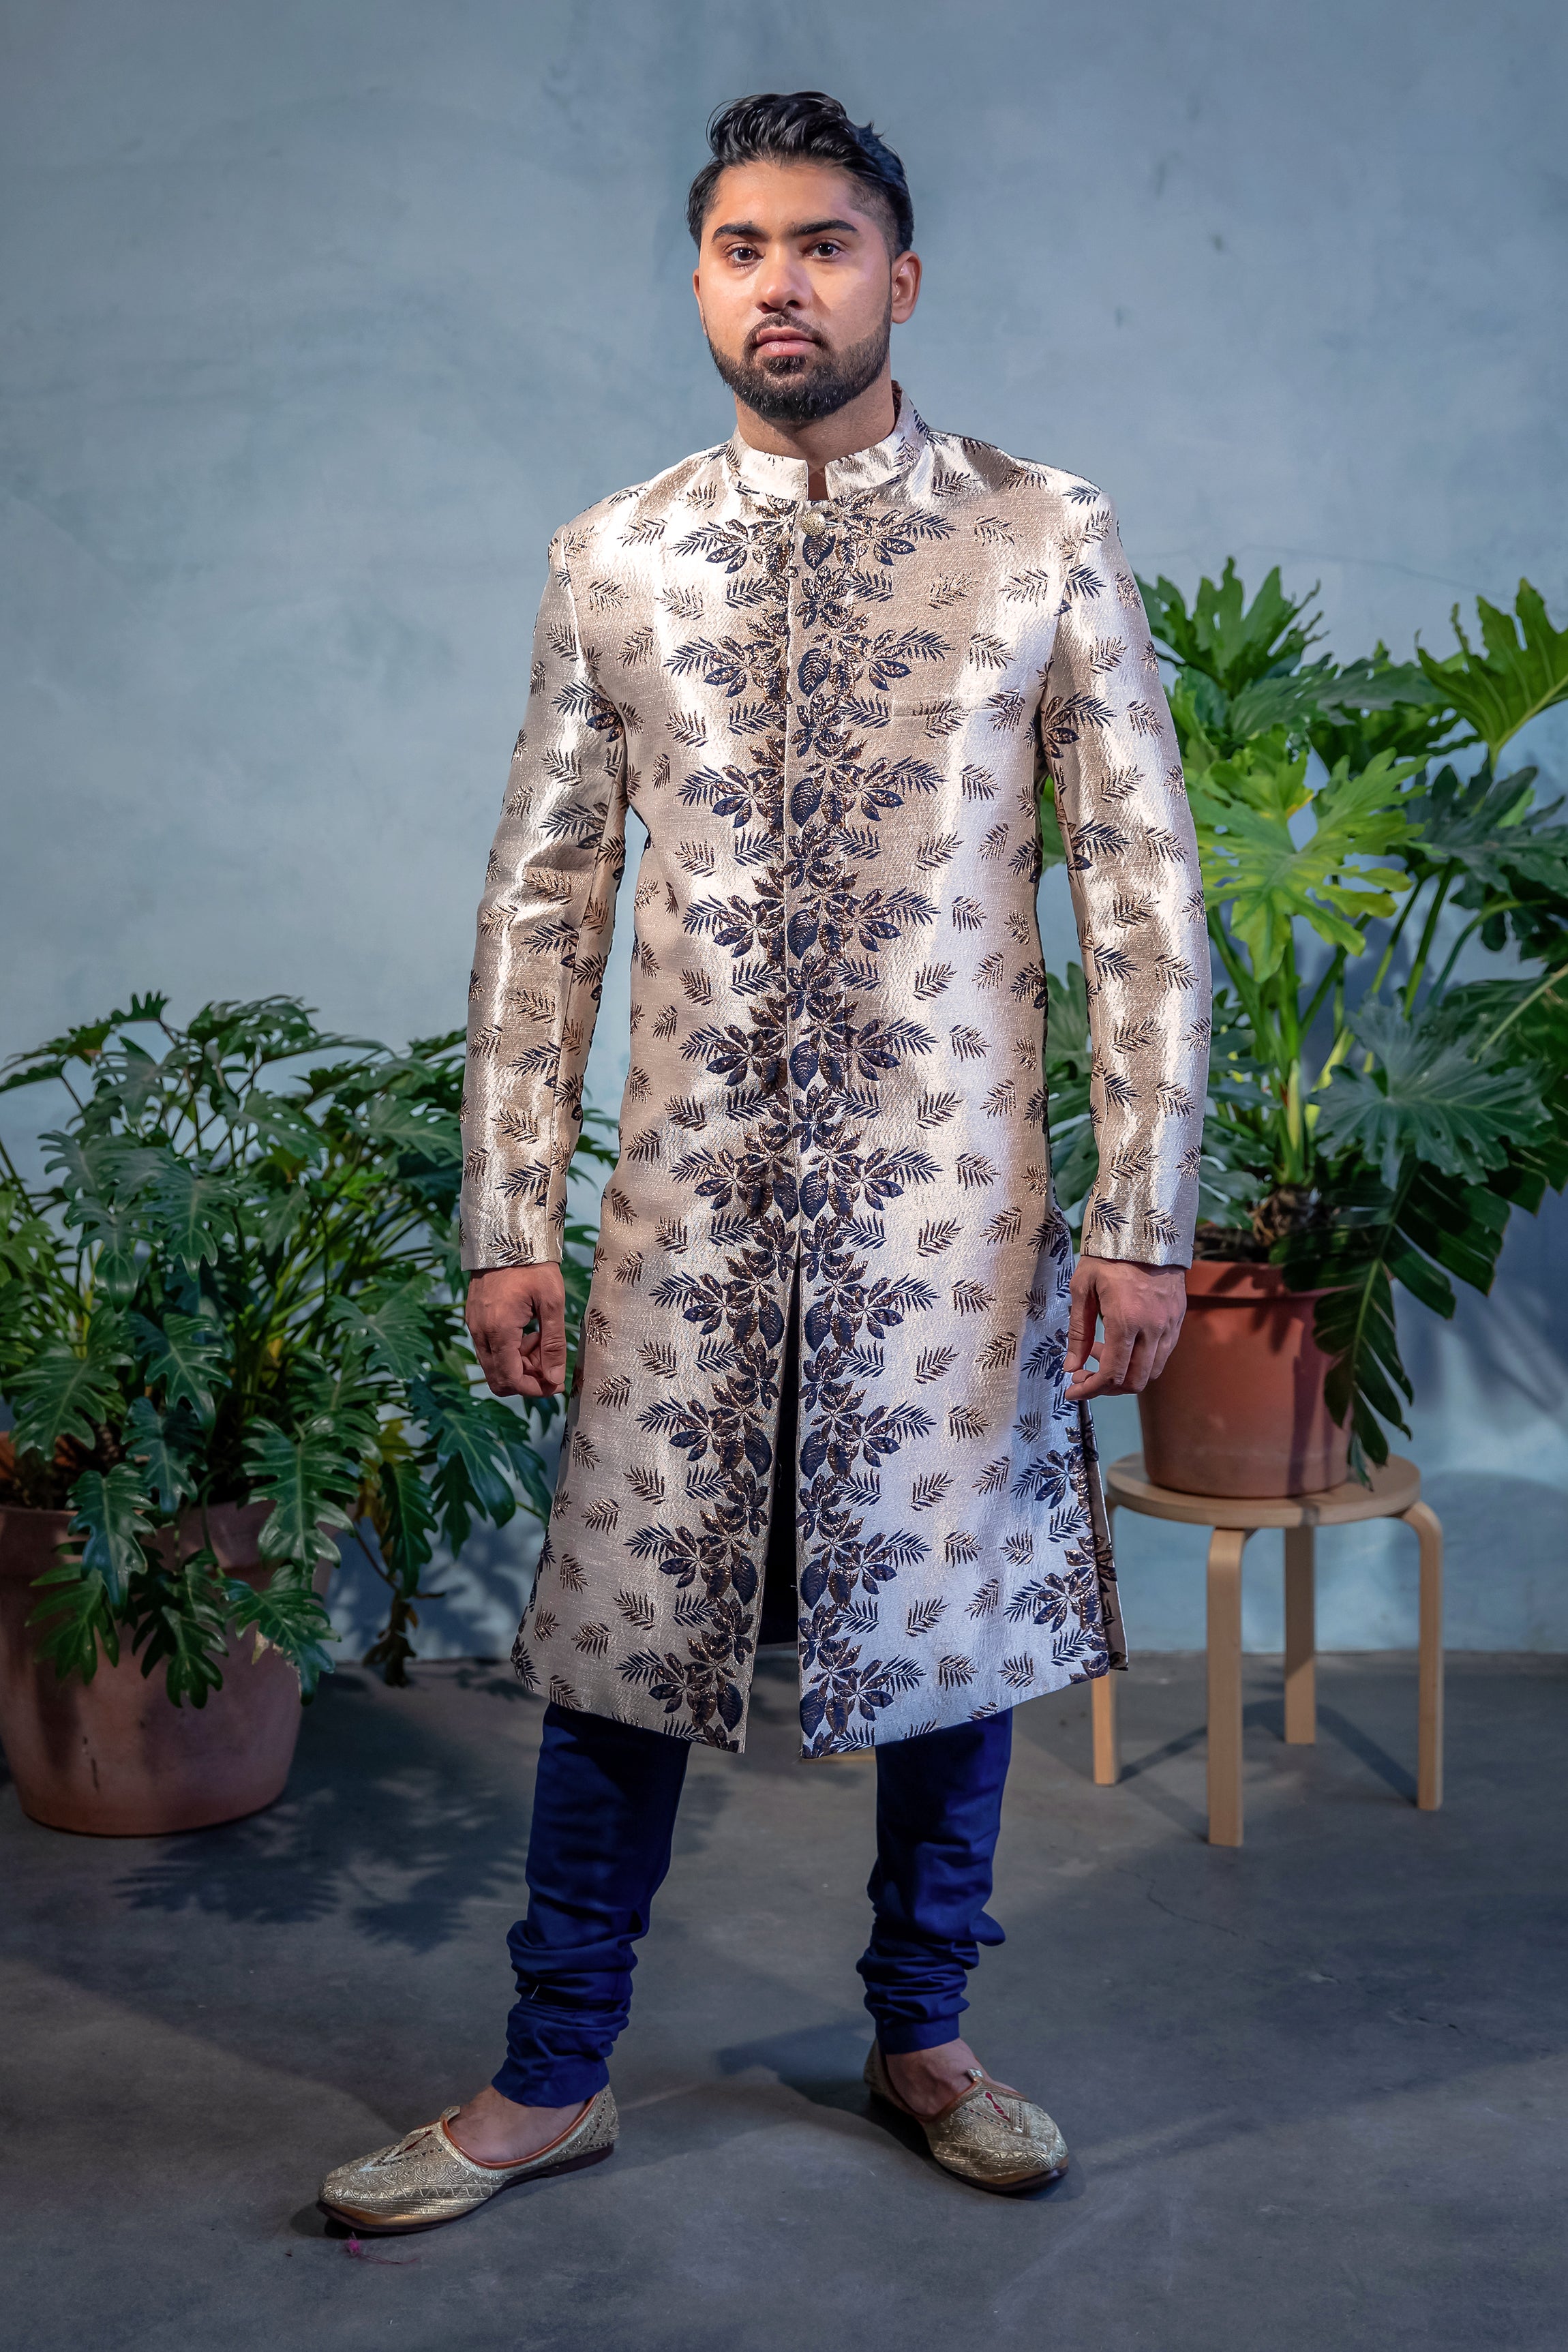 VEER Palm Floral Metallic Sherwani Jacket - Front View - Harleen Kaur - Indian Menswear